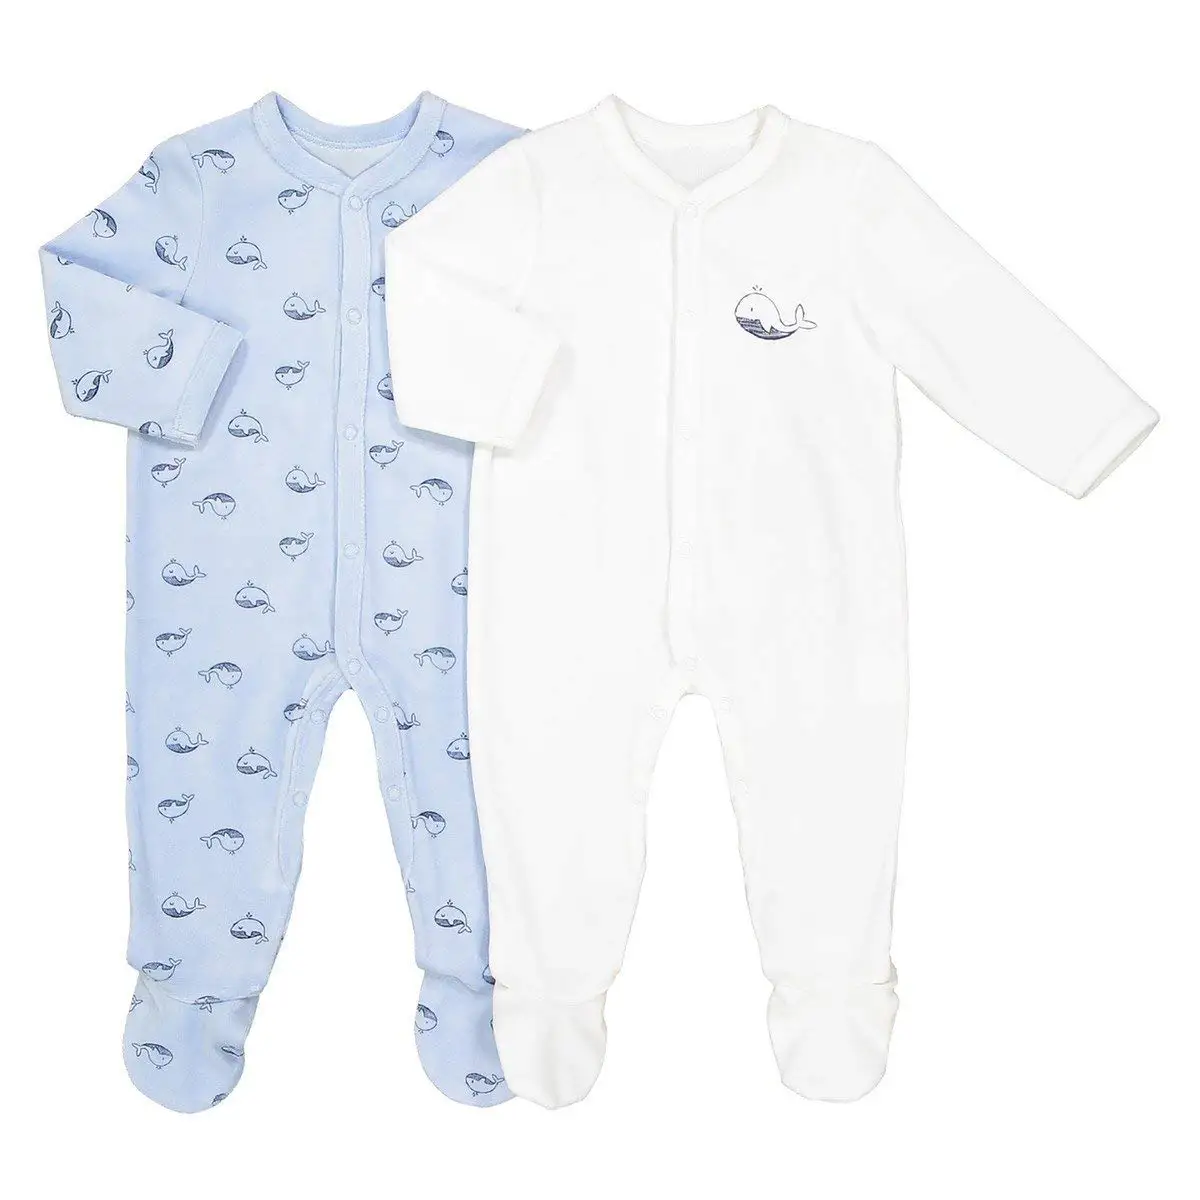 children's sleep suits